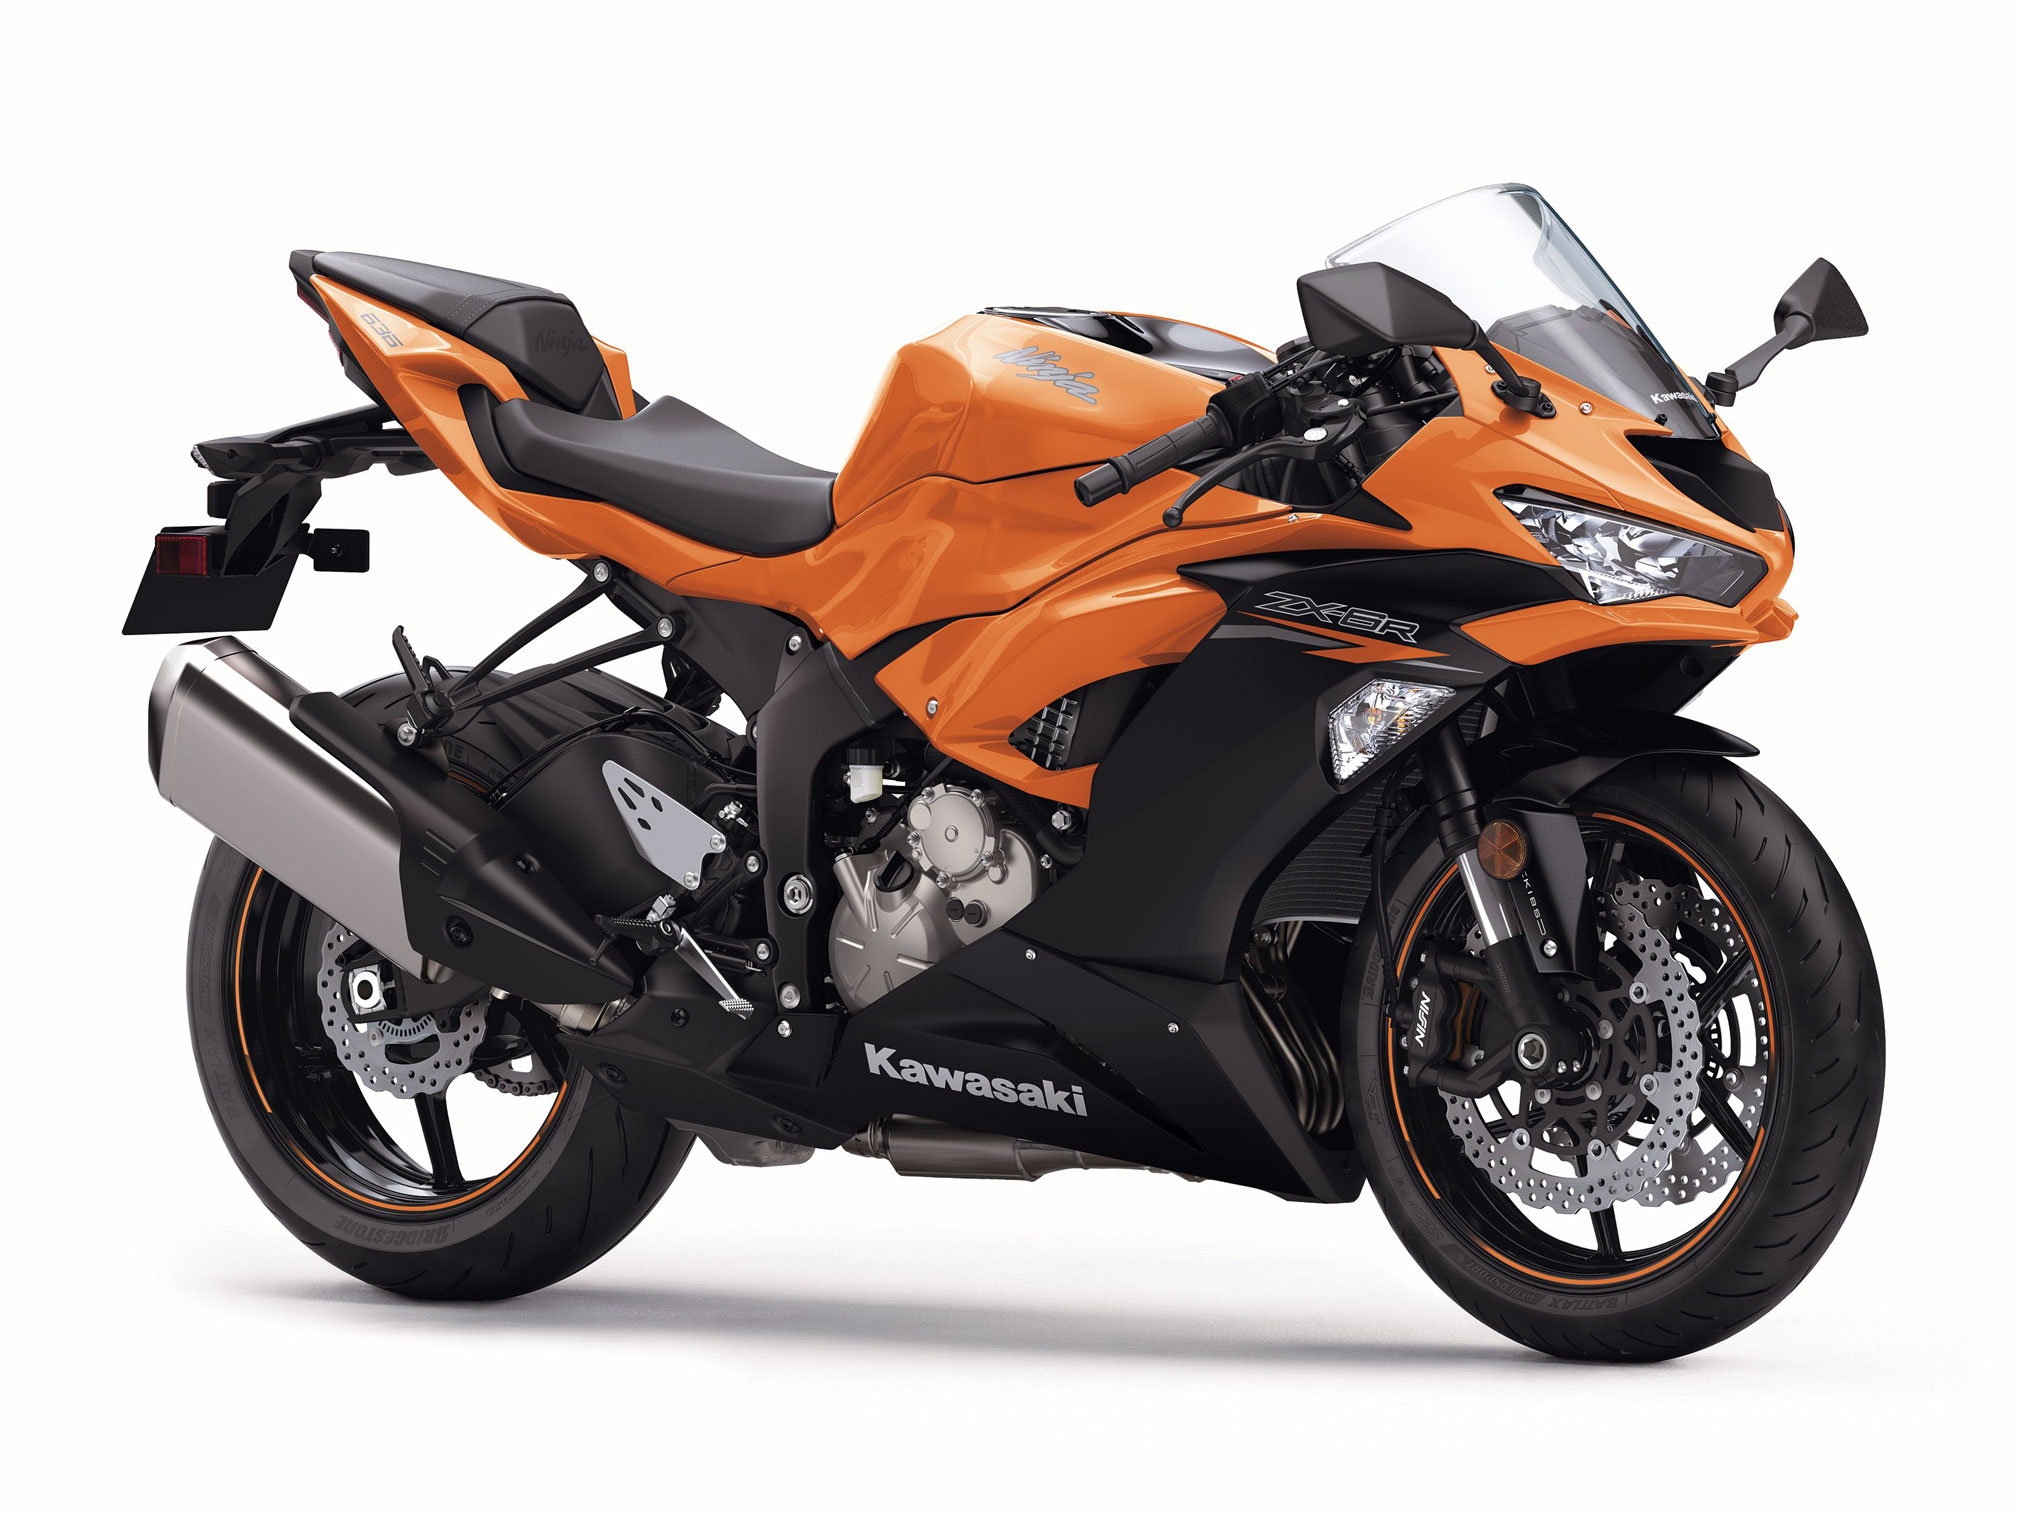 2020 Kawasaki Ninja ZX-6R Guide • Total Motorcycle